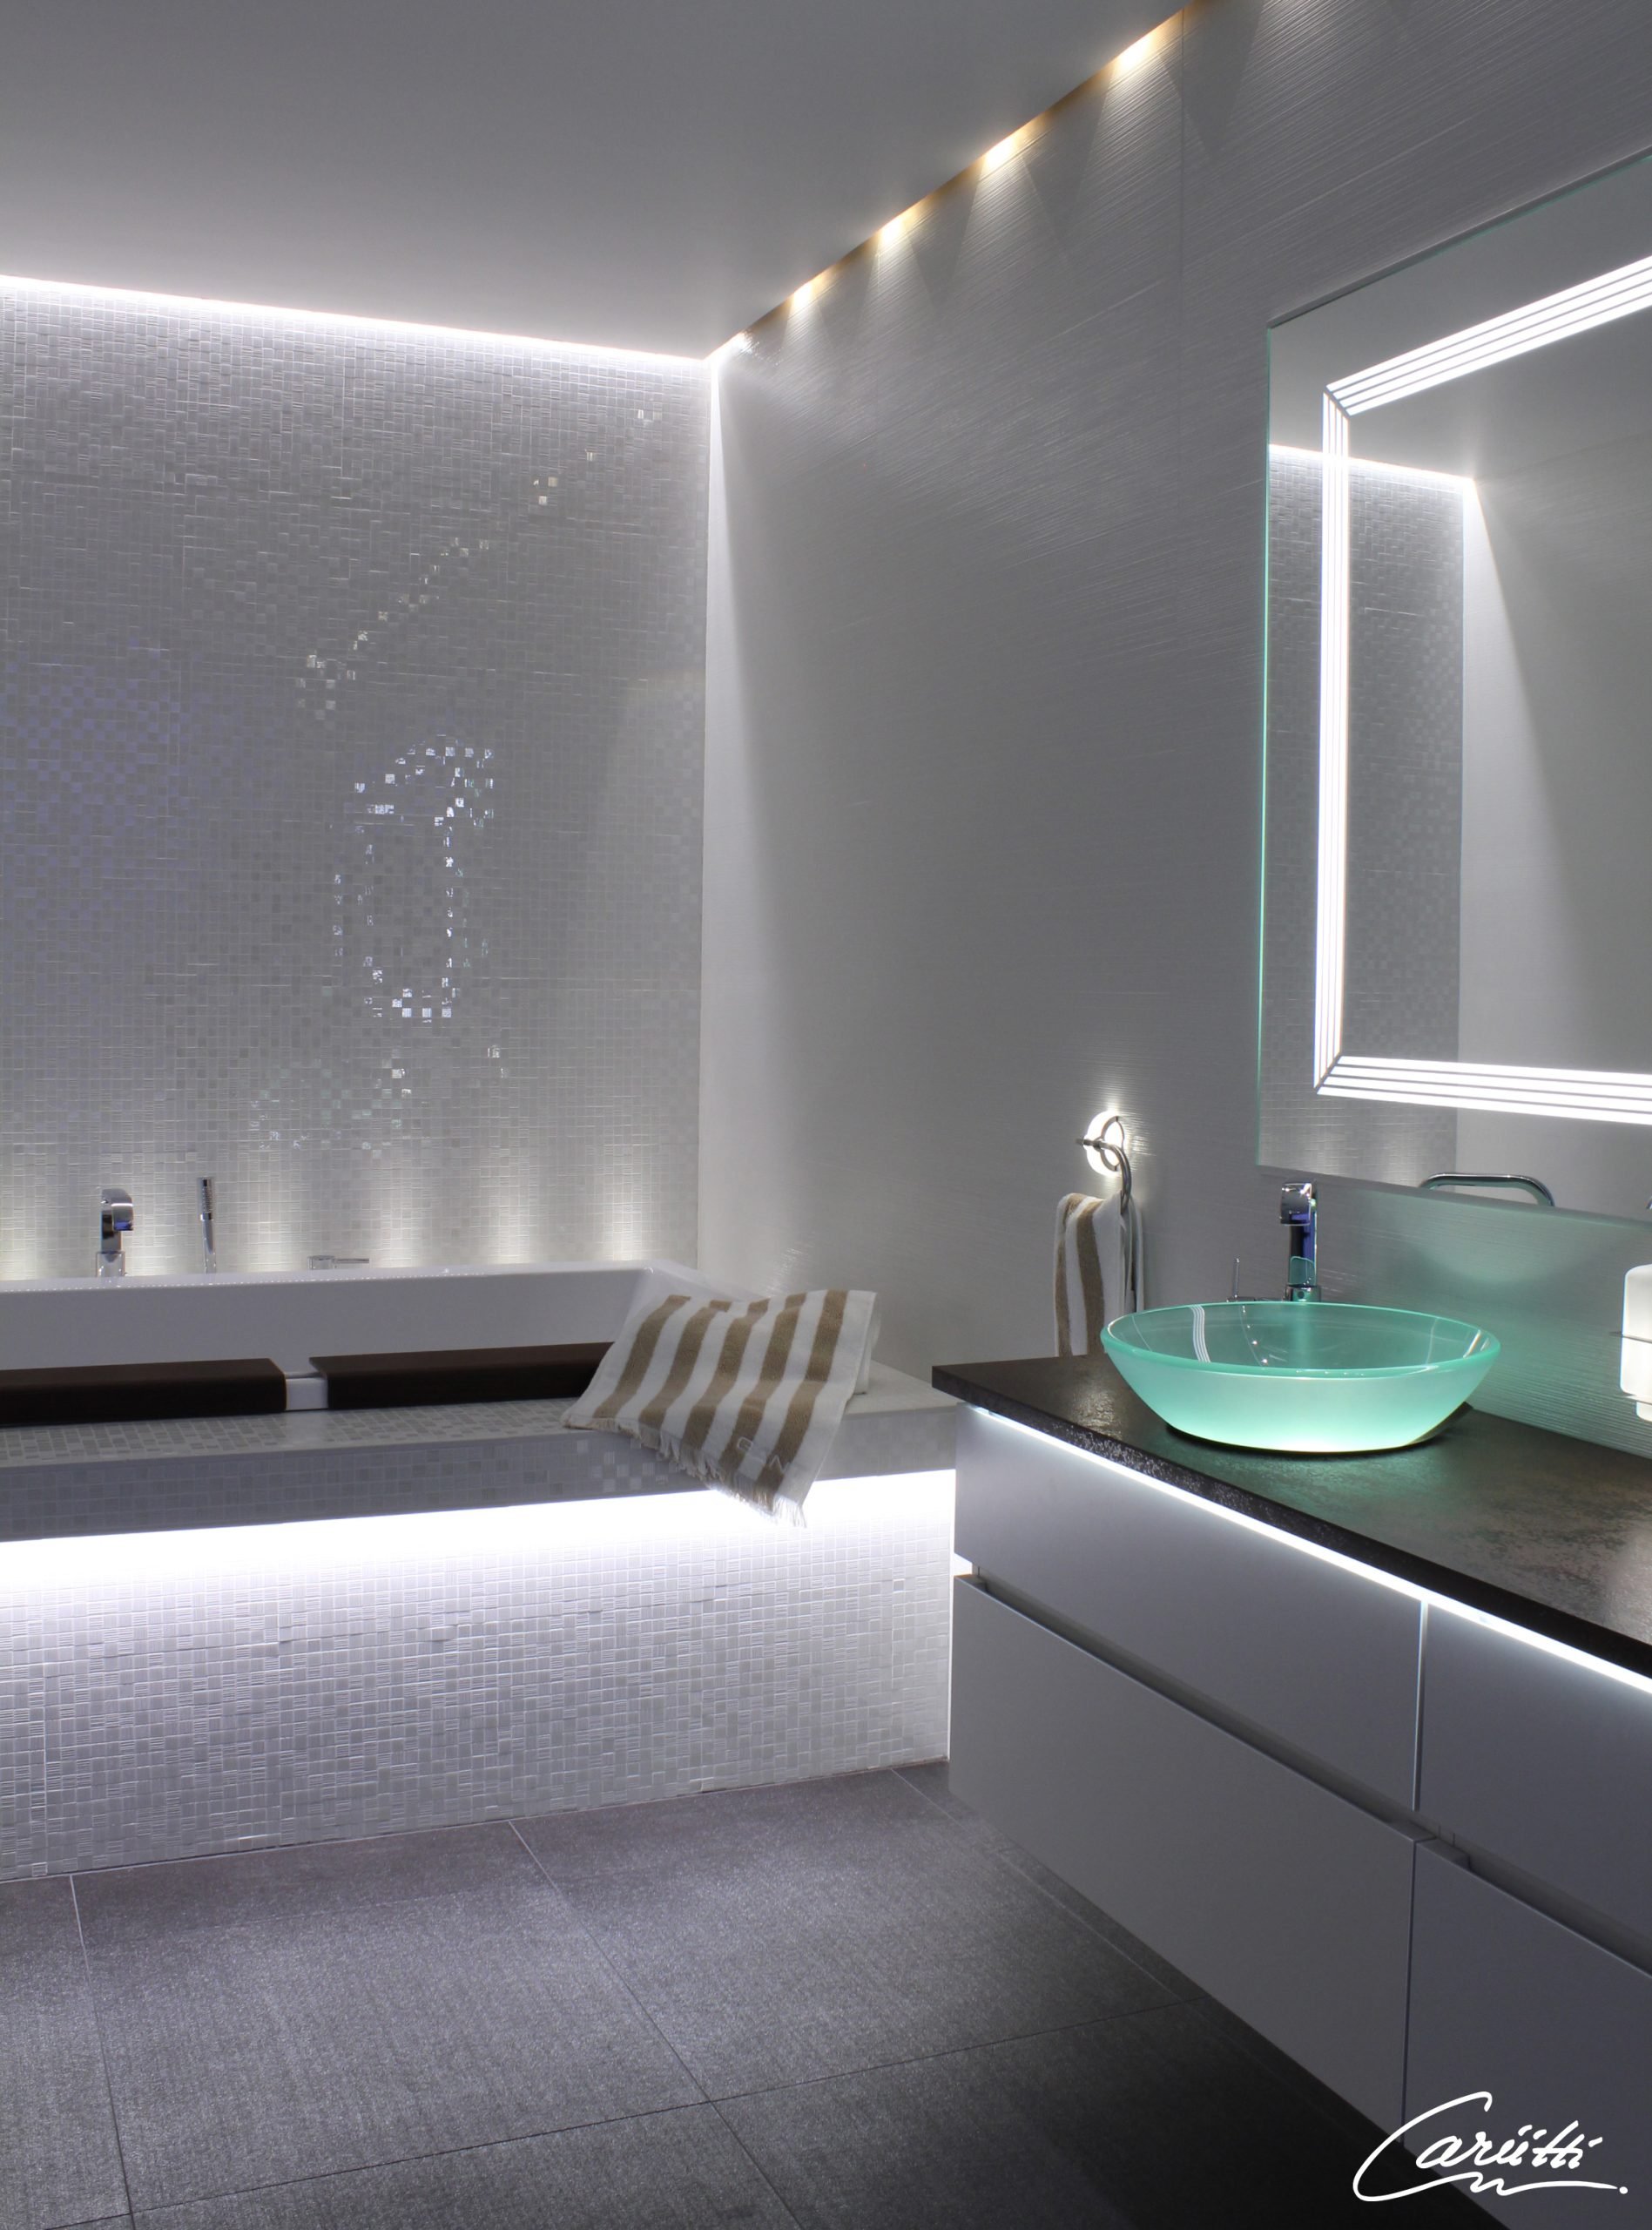 подсветка полок в ванной светодиодной лентой